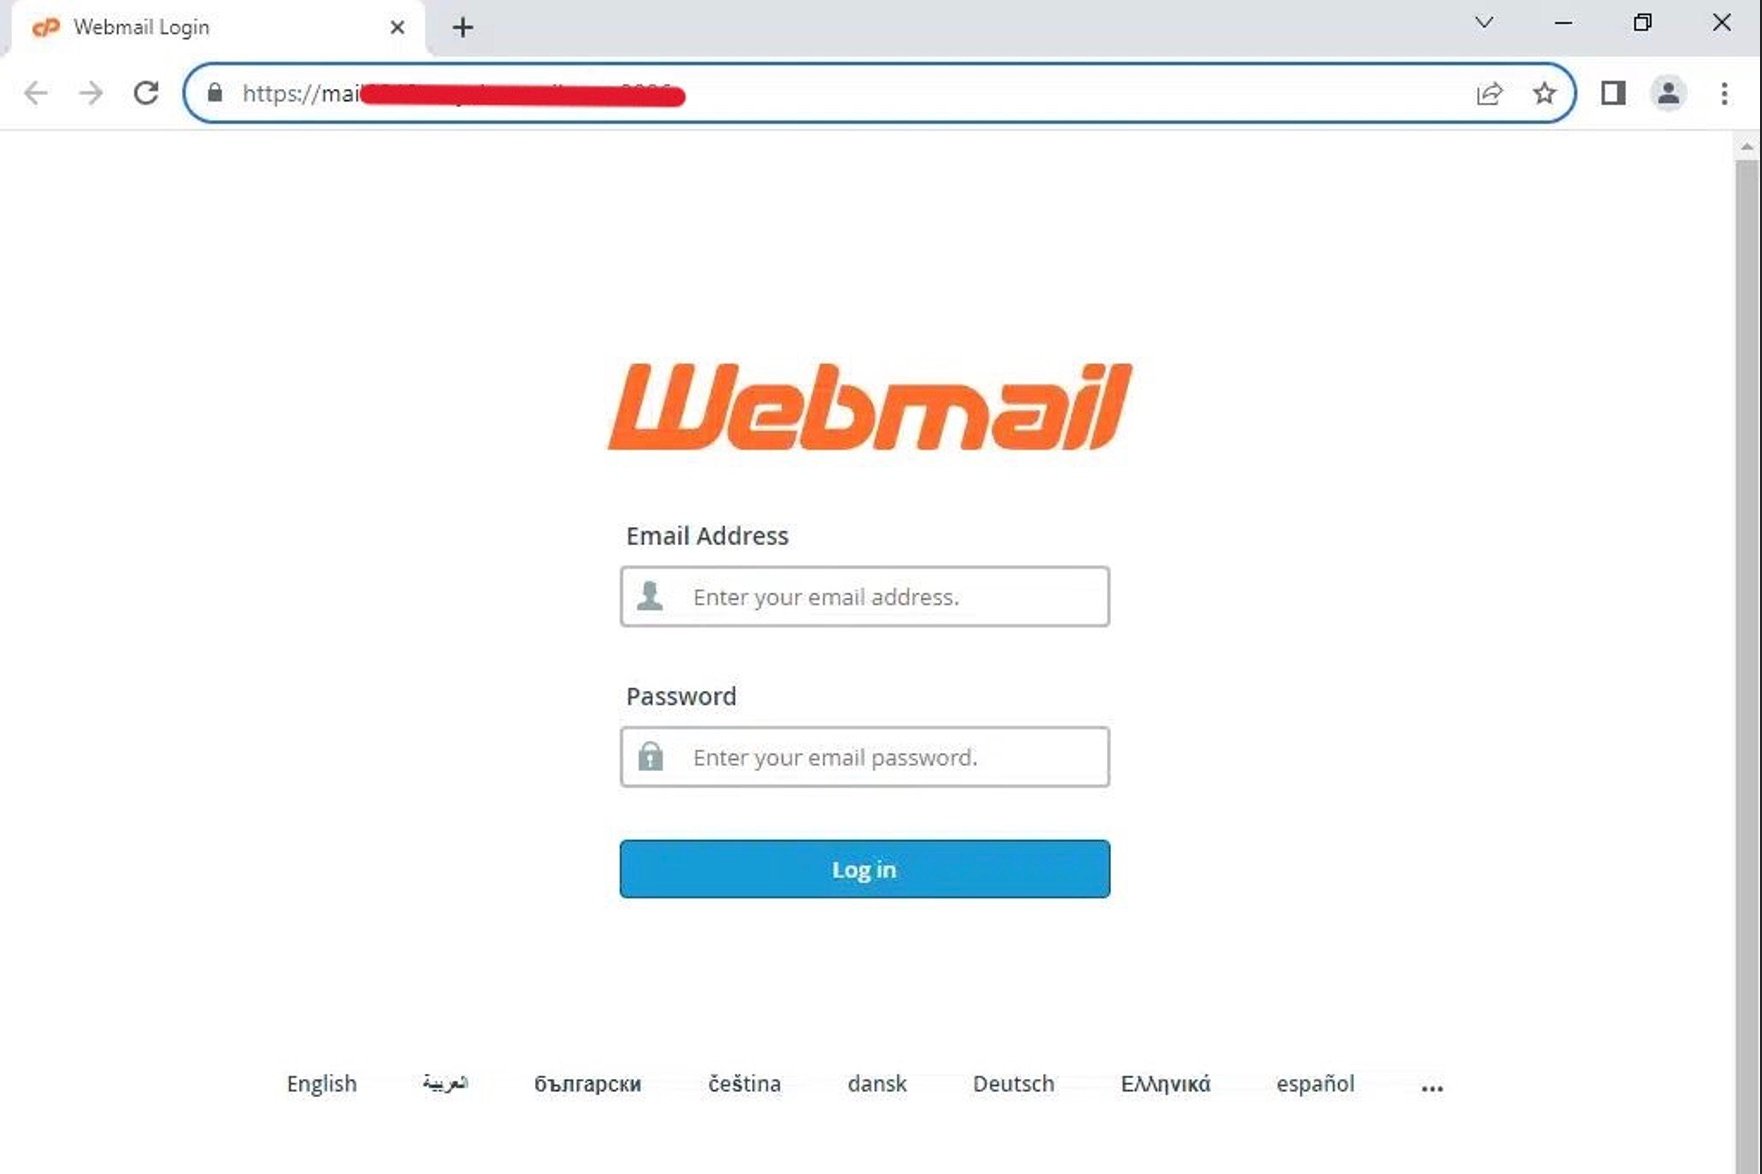 Fake cPanel WebMail login page 